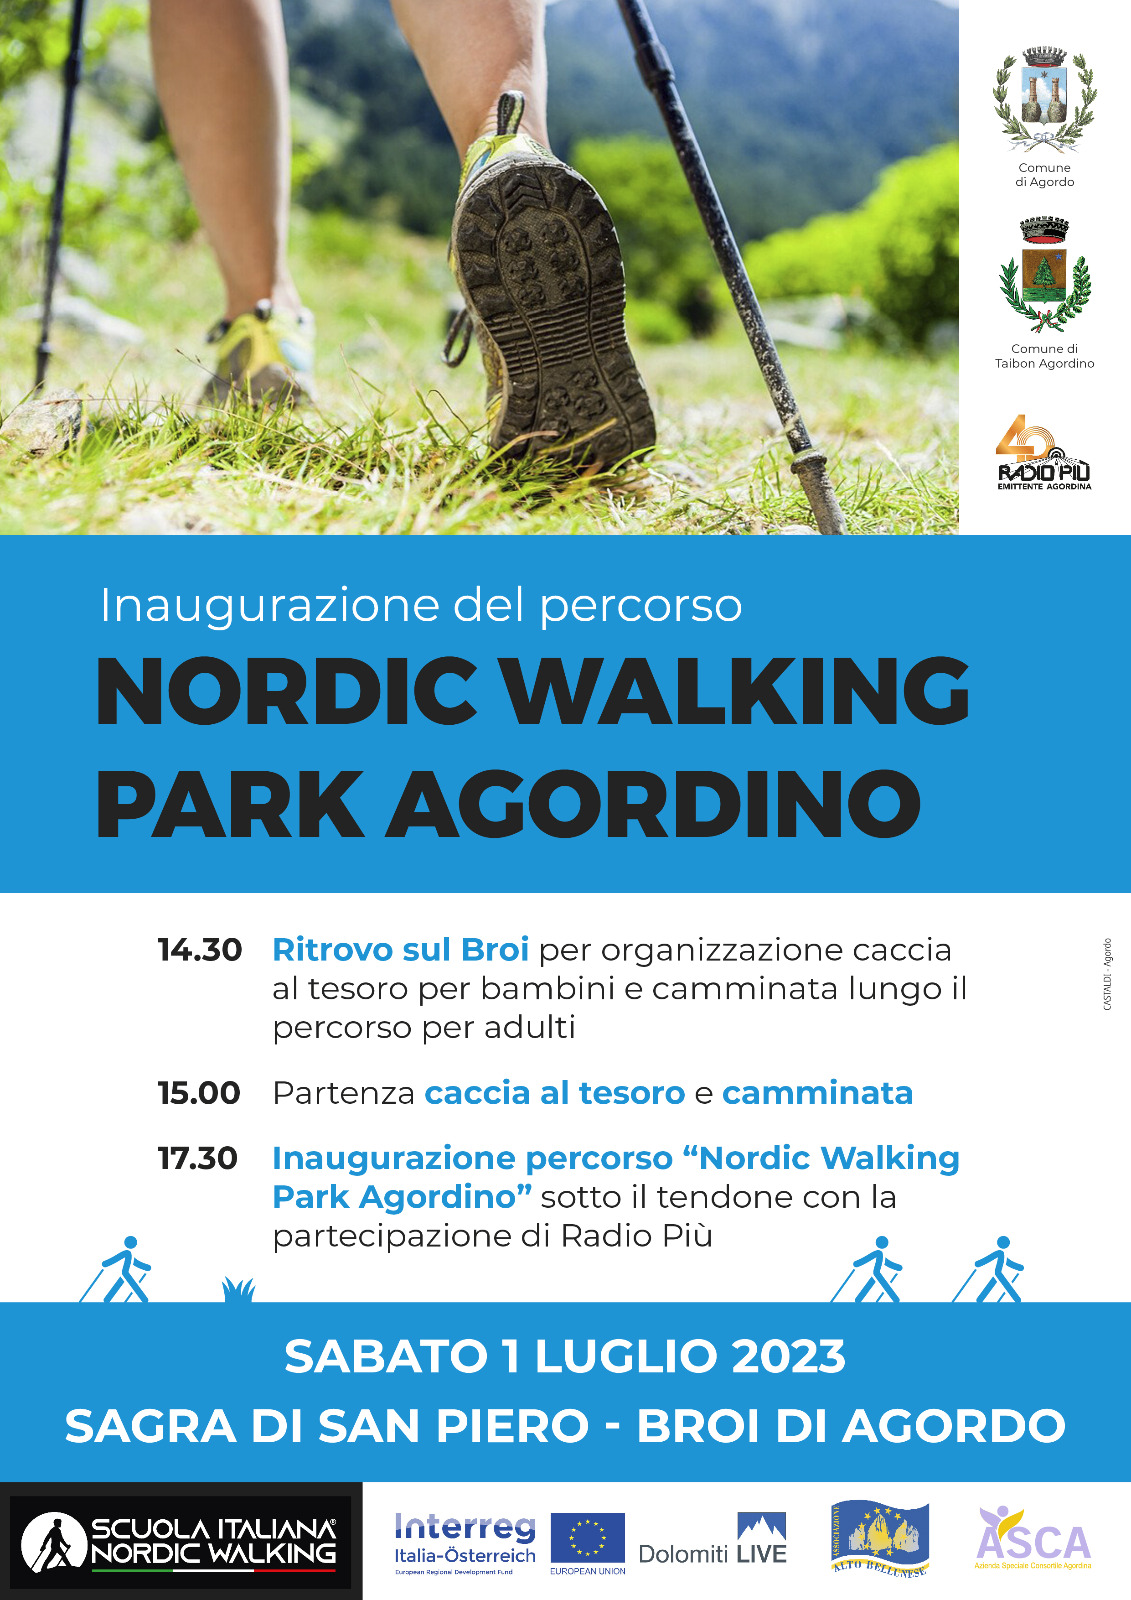 INAUGURAZIONE DEL PERCORSO NORDIC WALKING PARK AGORDINO